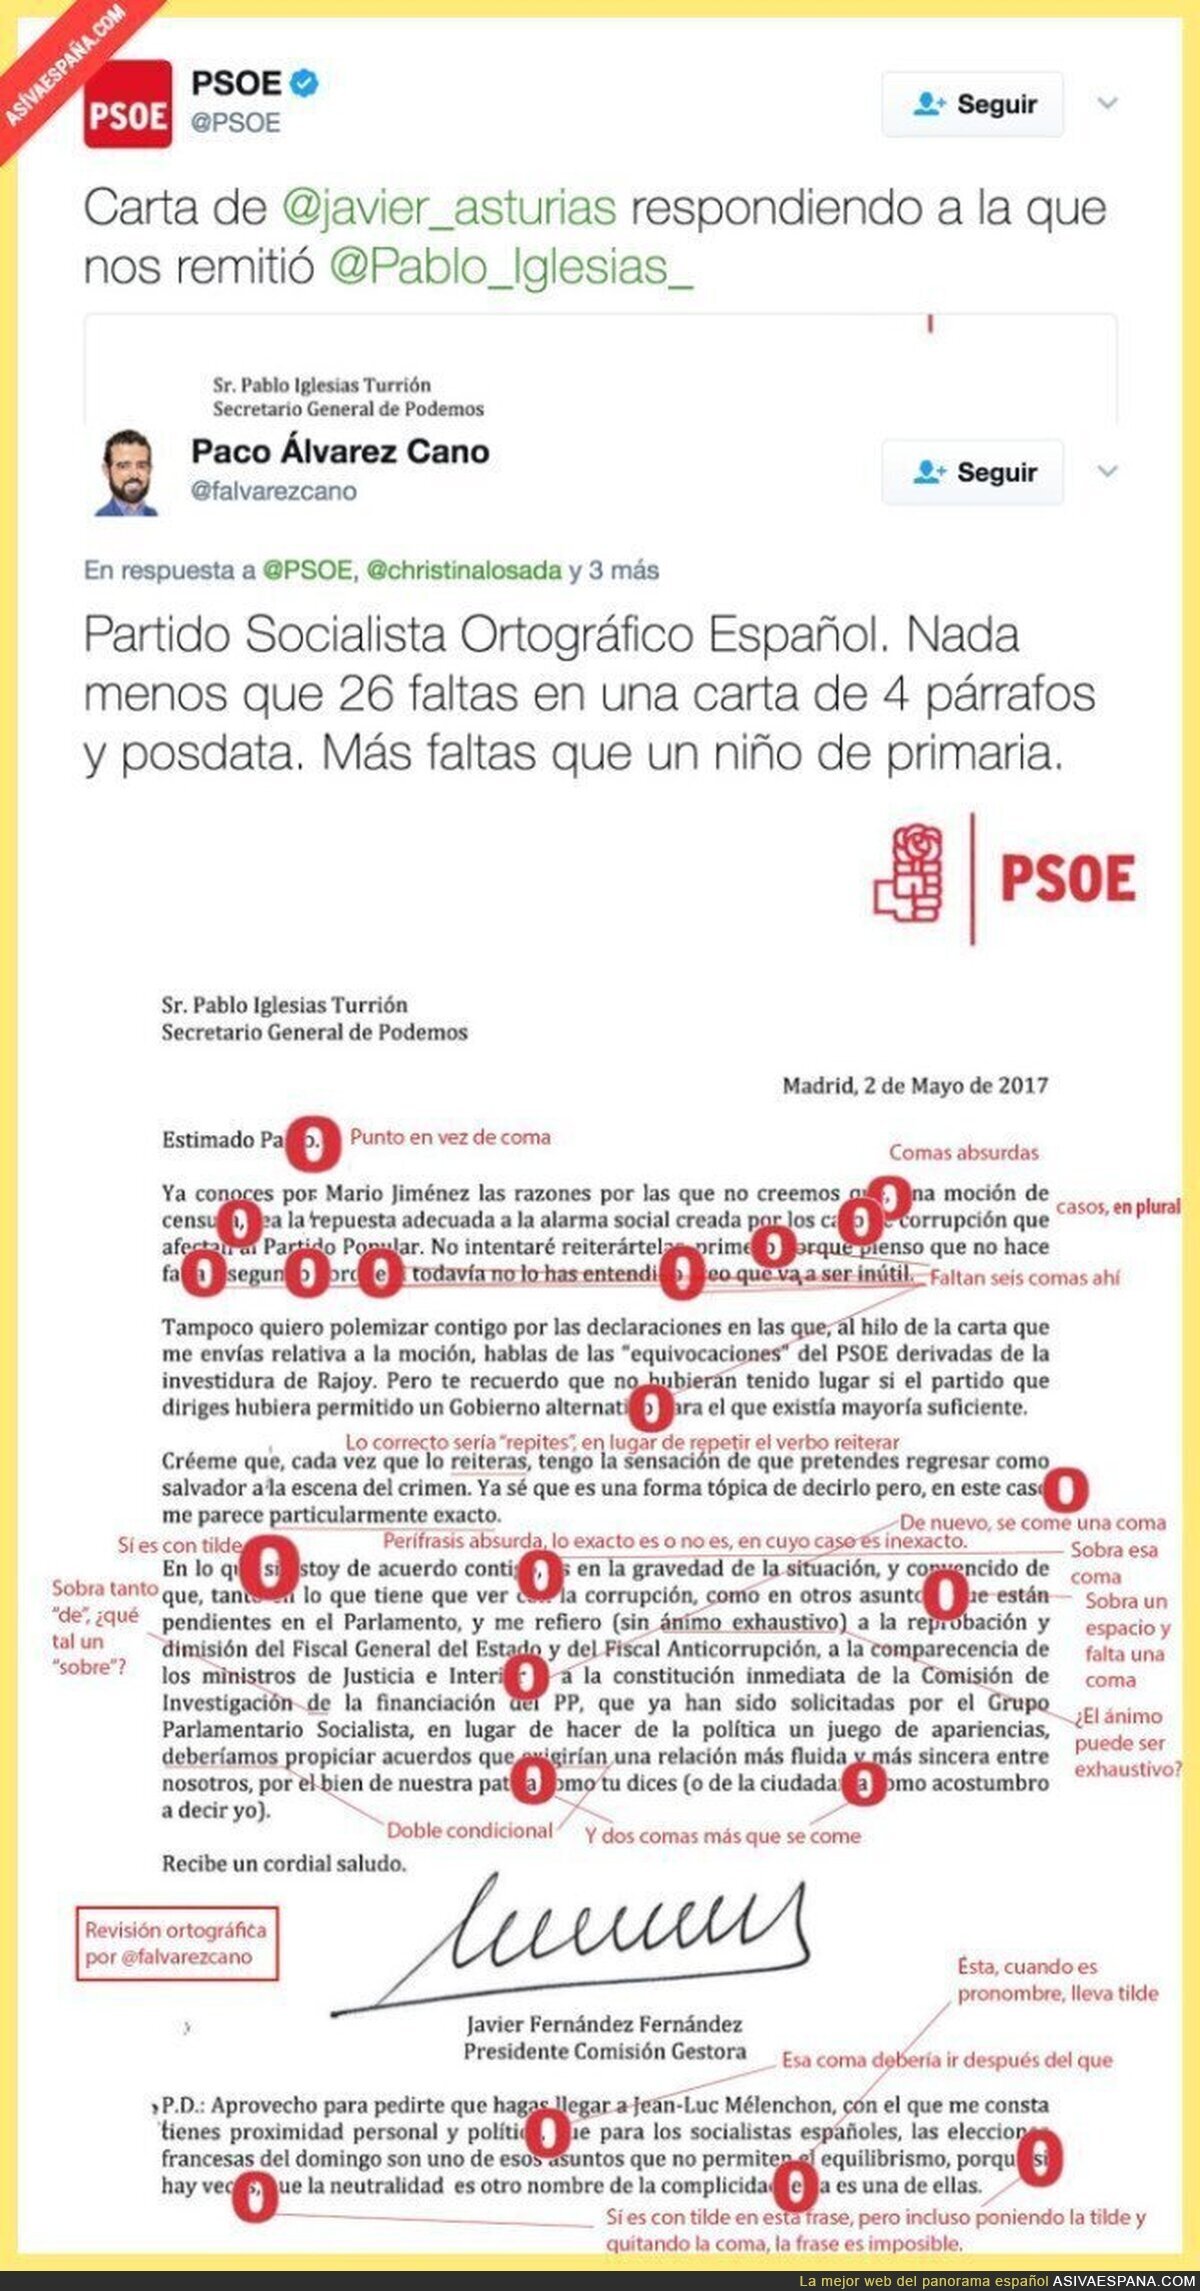 Corrigen la carta de Javier Fernández (PSOE) a Pablo Iglesias y encuentran todos estos errores